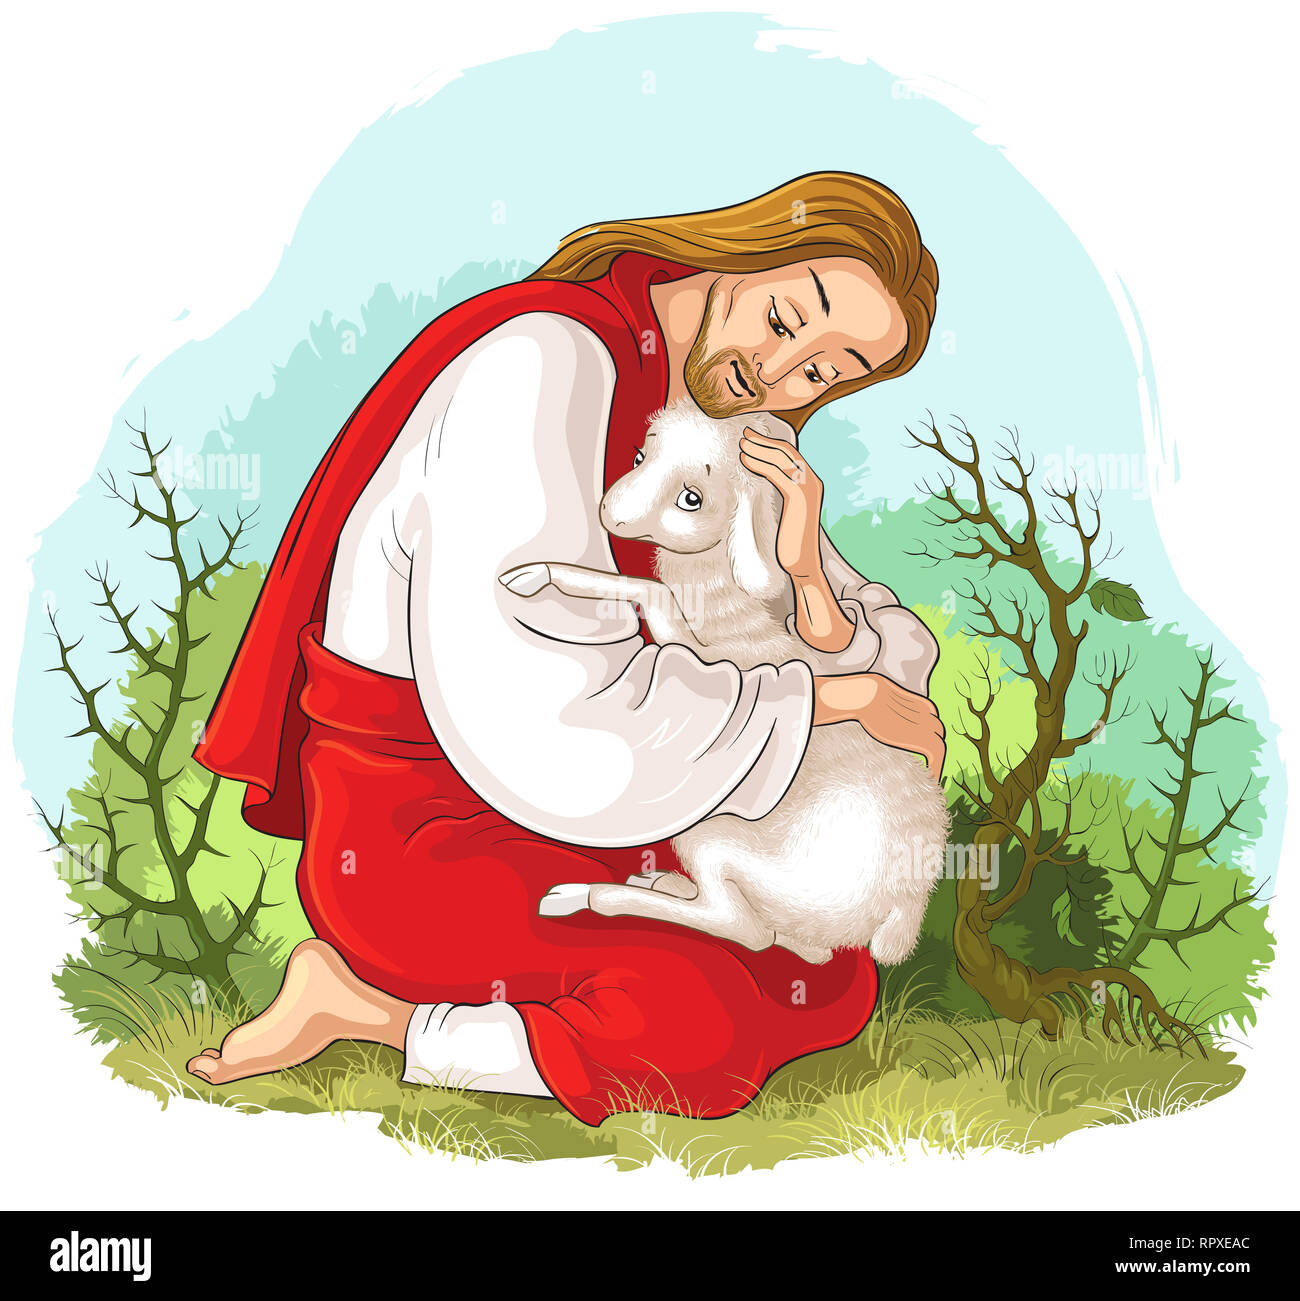 Histoire de Jésus Christ. La parabole de la brebis perdue. Le Bon Pasteur le sauvetage d'un agneau pris dans les épines Banque D'Images